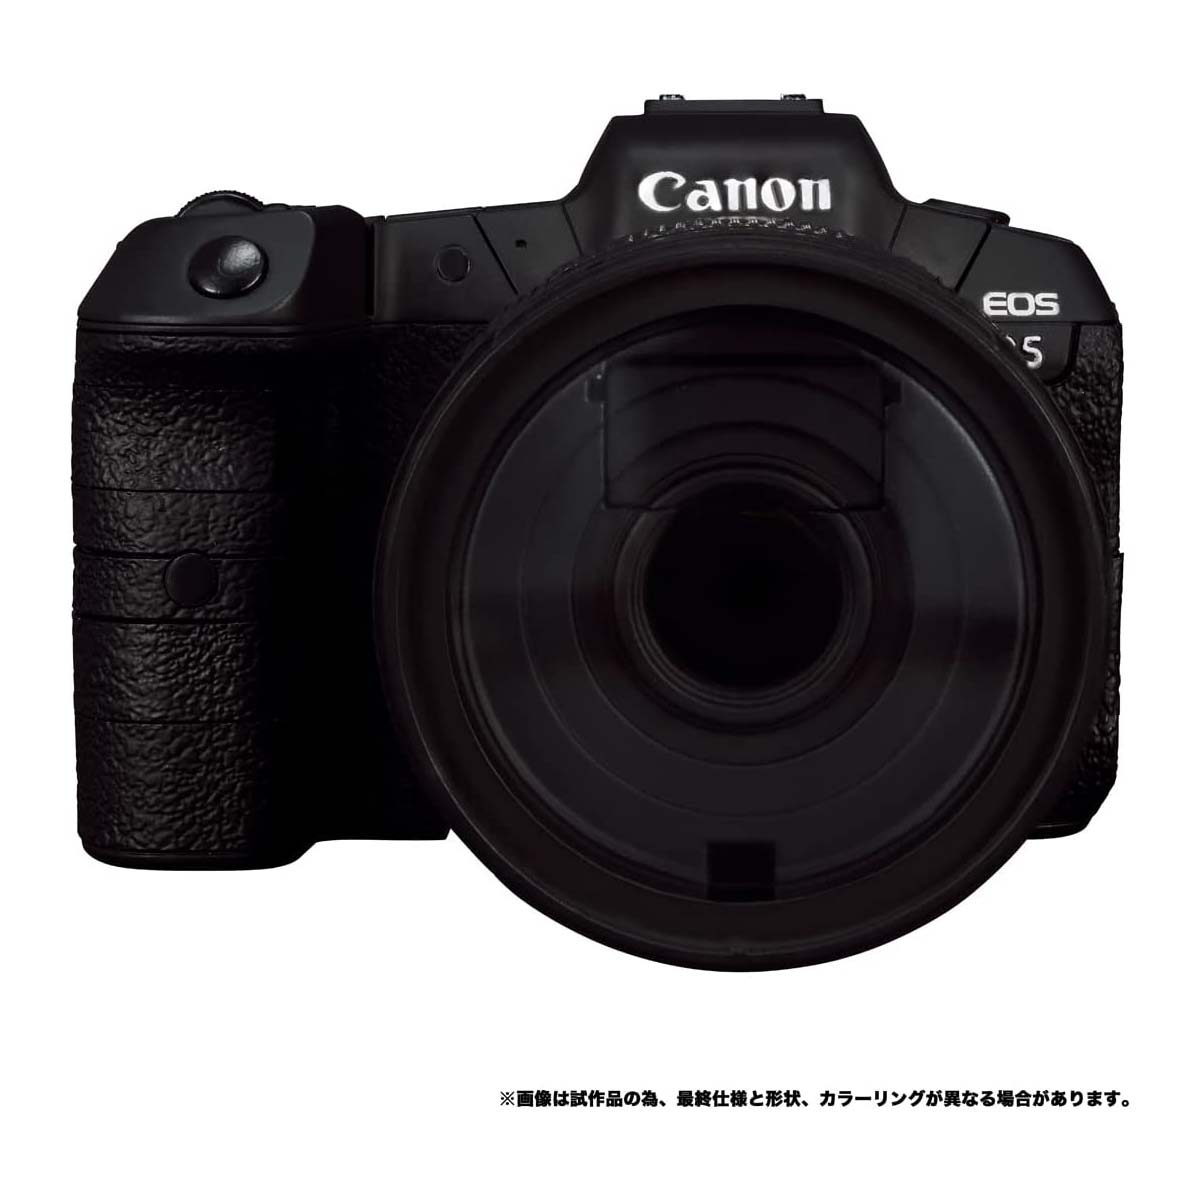 トランスフォーマー『Canon/TRANSFORMERS オプティマスプライムR5』可変可動フィギュア-006